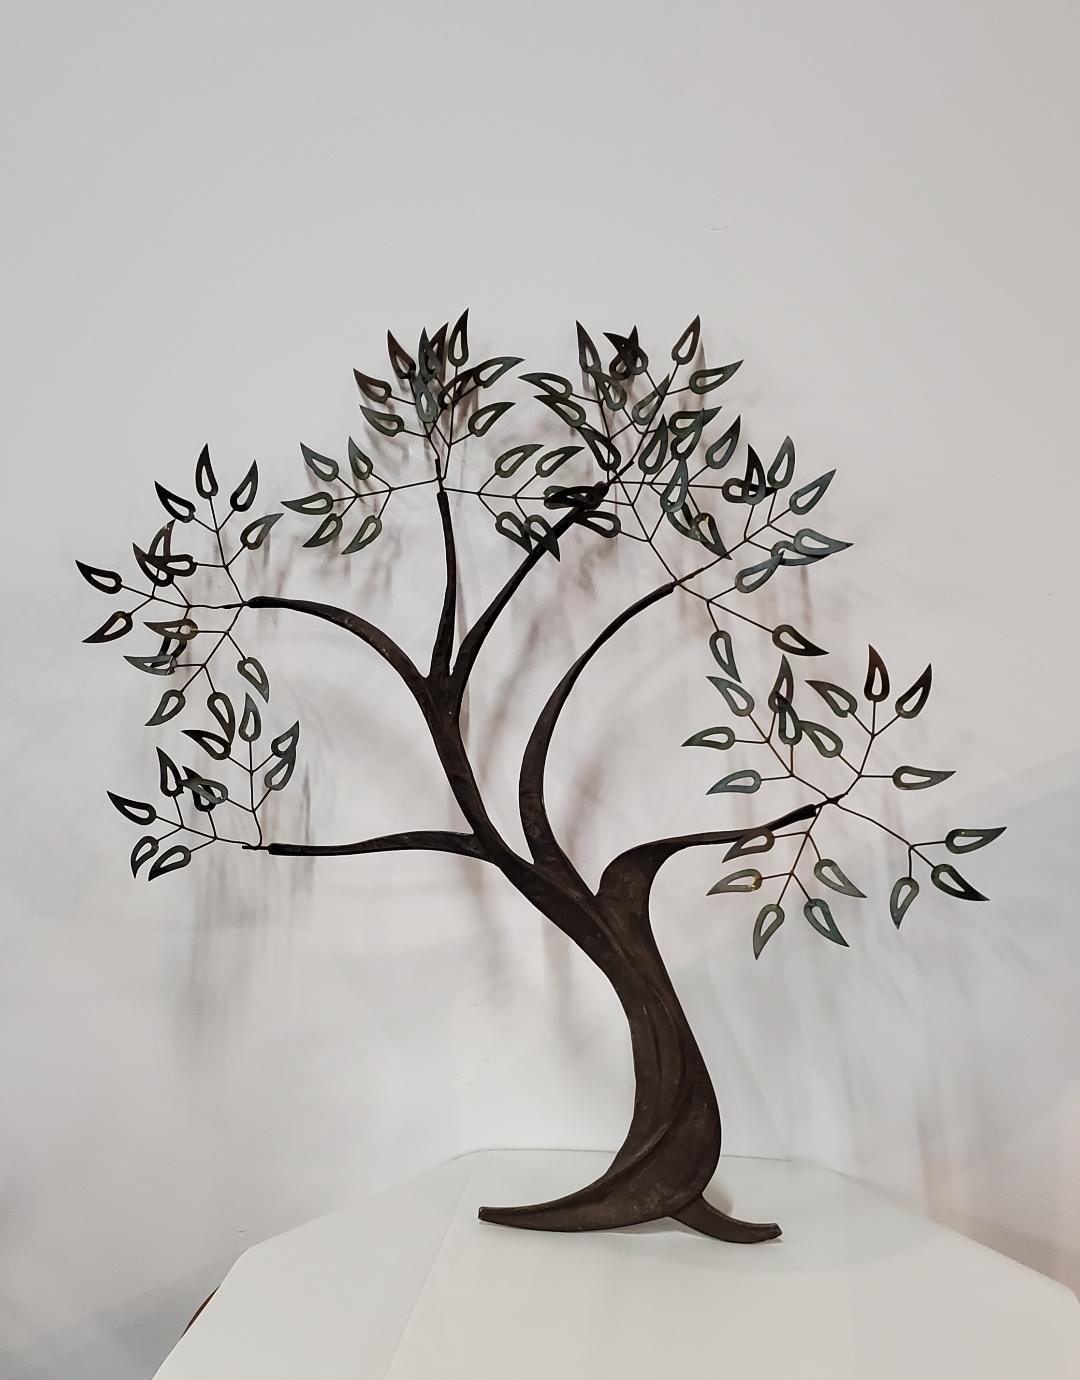 1960er Jahre Vintage verdrehte Metall Baum des Lebens Wand Kunst Skulptur 

Verdrehtes Metallbaumdesign mit verlängerten Zweigen und Metallblättern mit Messingpatina.

Diese dekorative Metall Baum des Lebens Wandskulptur sitzt zwei und ein